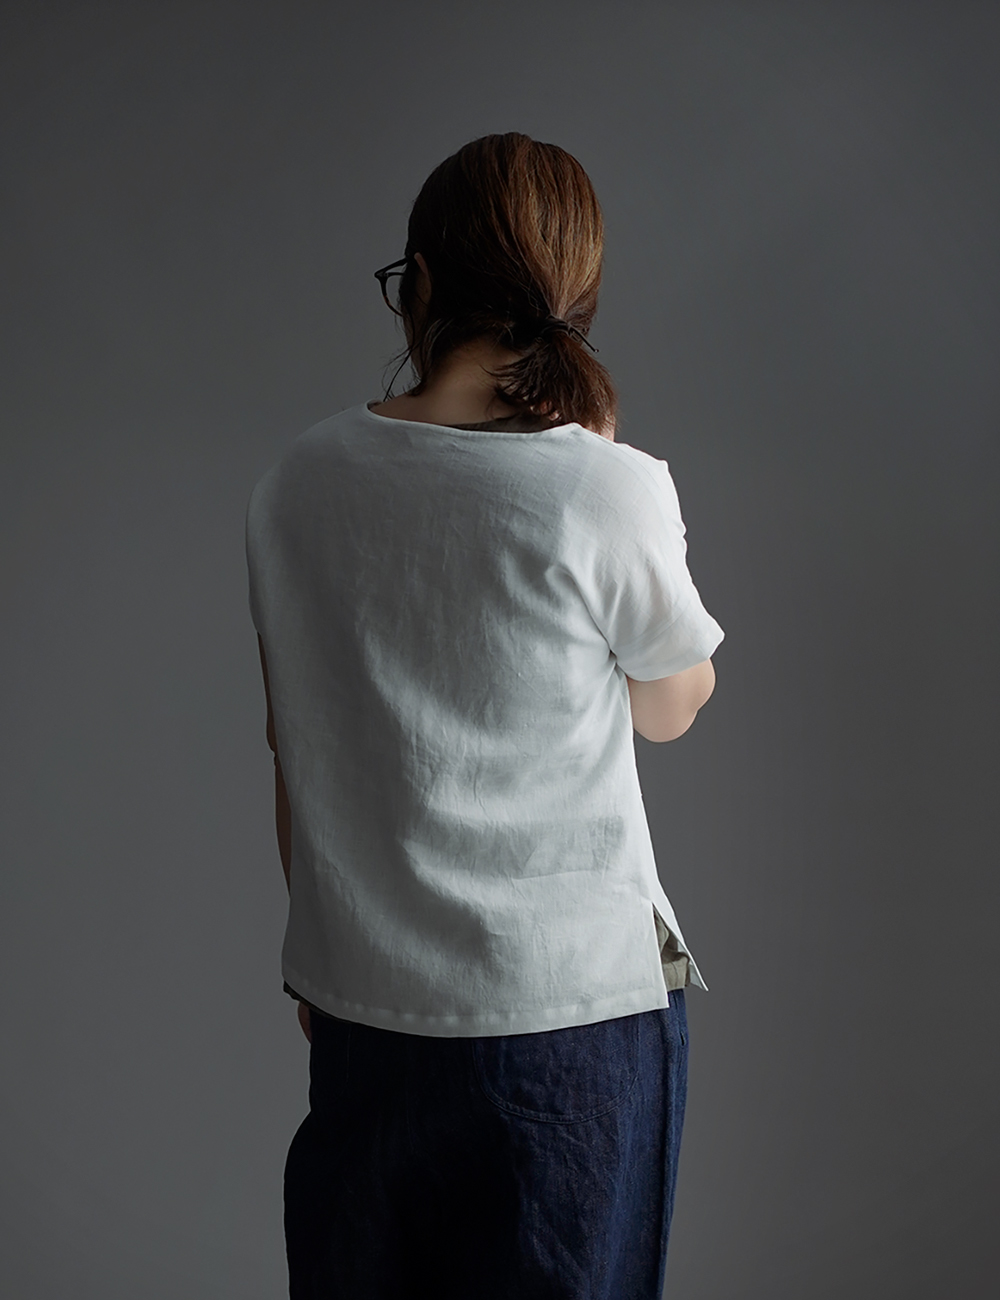 【wafu】Linen T-shirt ドロップショルダー Tシャツ　/白色 t001l-wht1